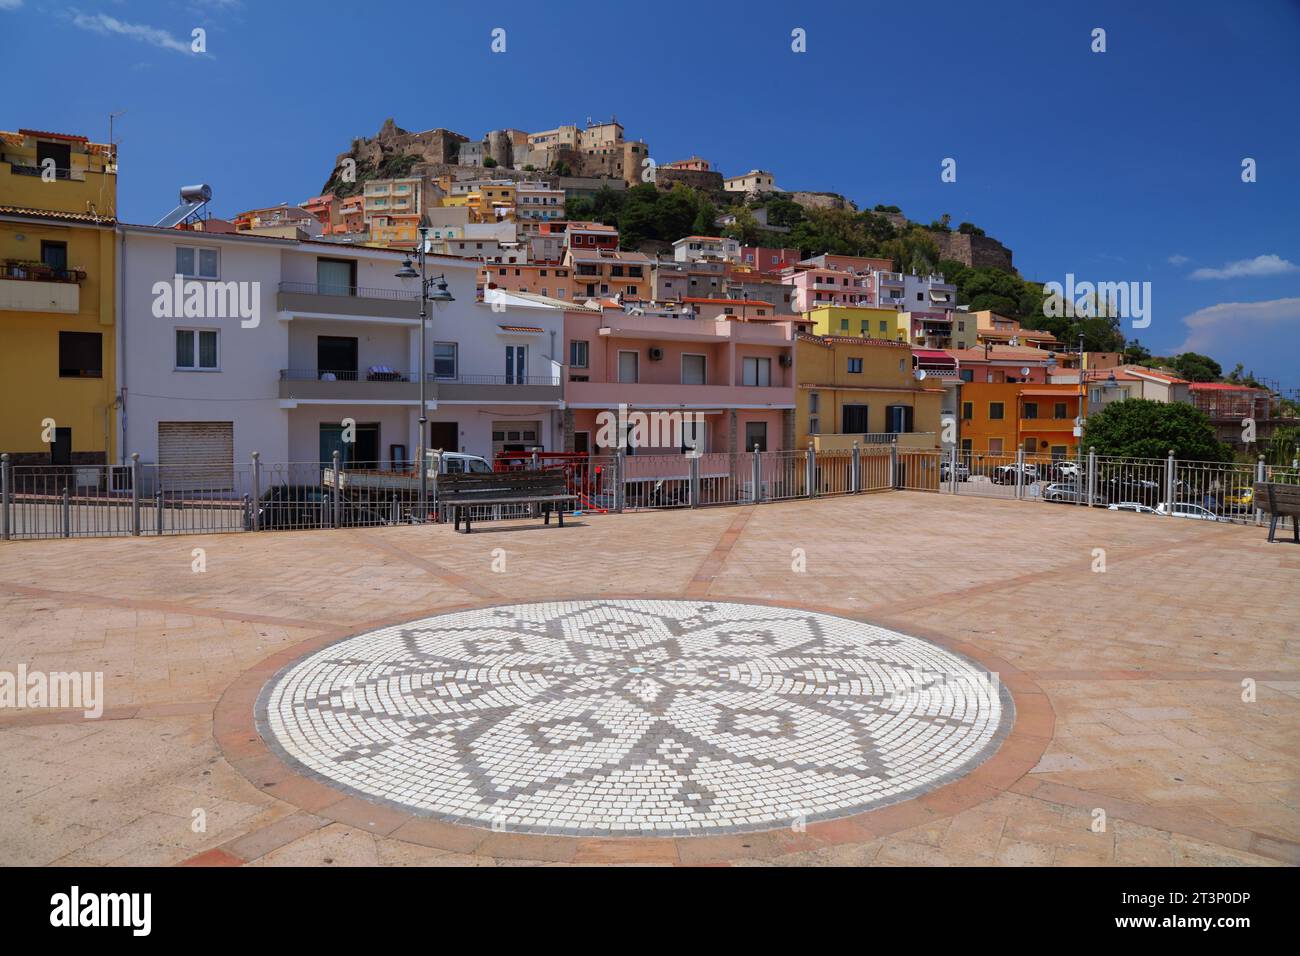 Castelsardo Stadt auf der Insel Sardinien, Italien. Landschaft in der Provinz Sassari, Golf von Asinara auf Sardinien. Stockfoto